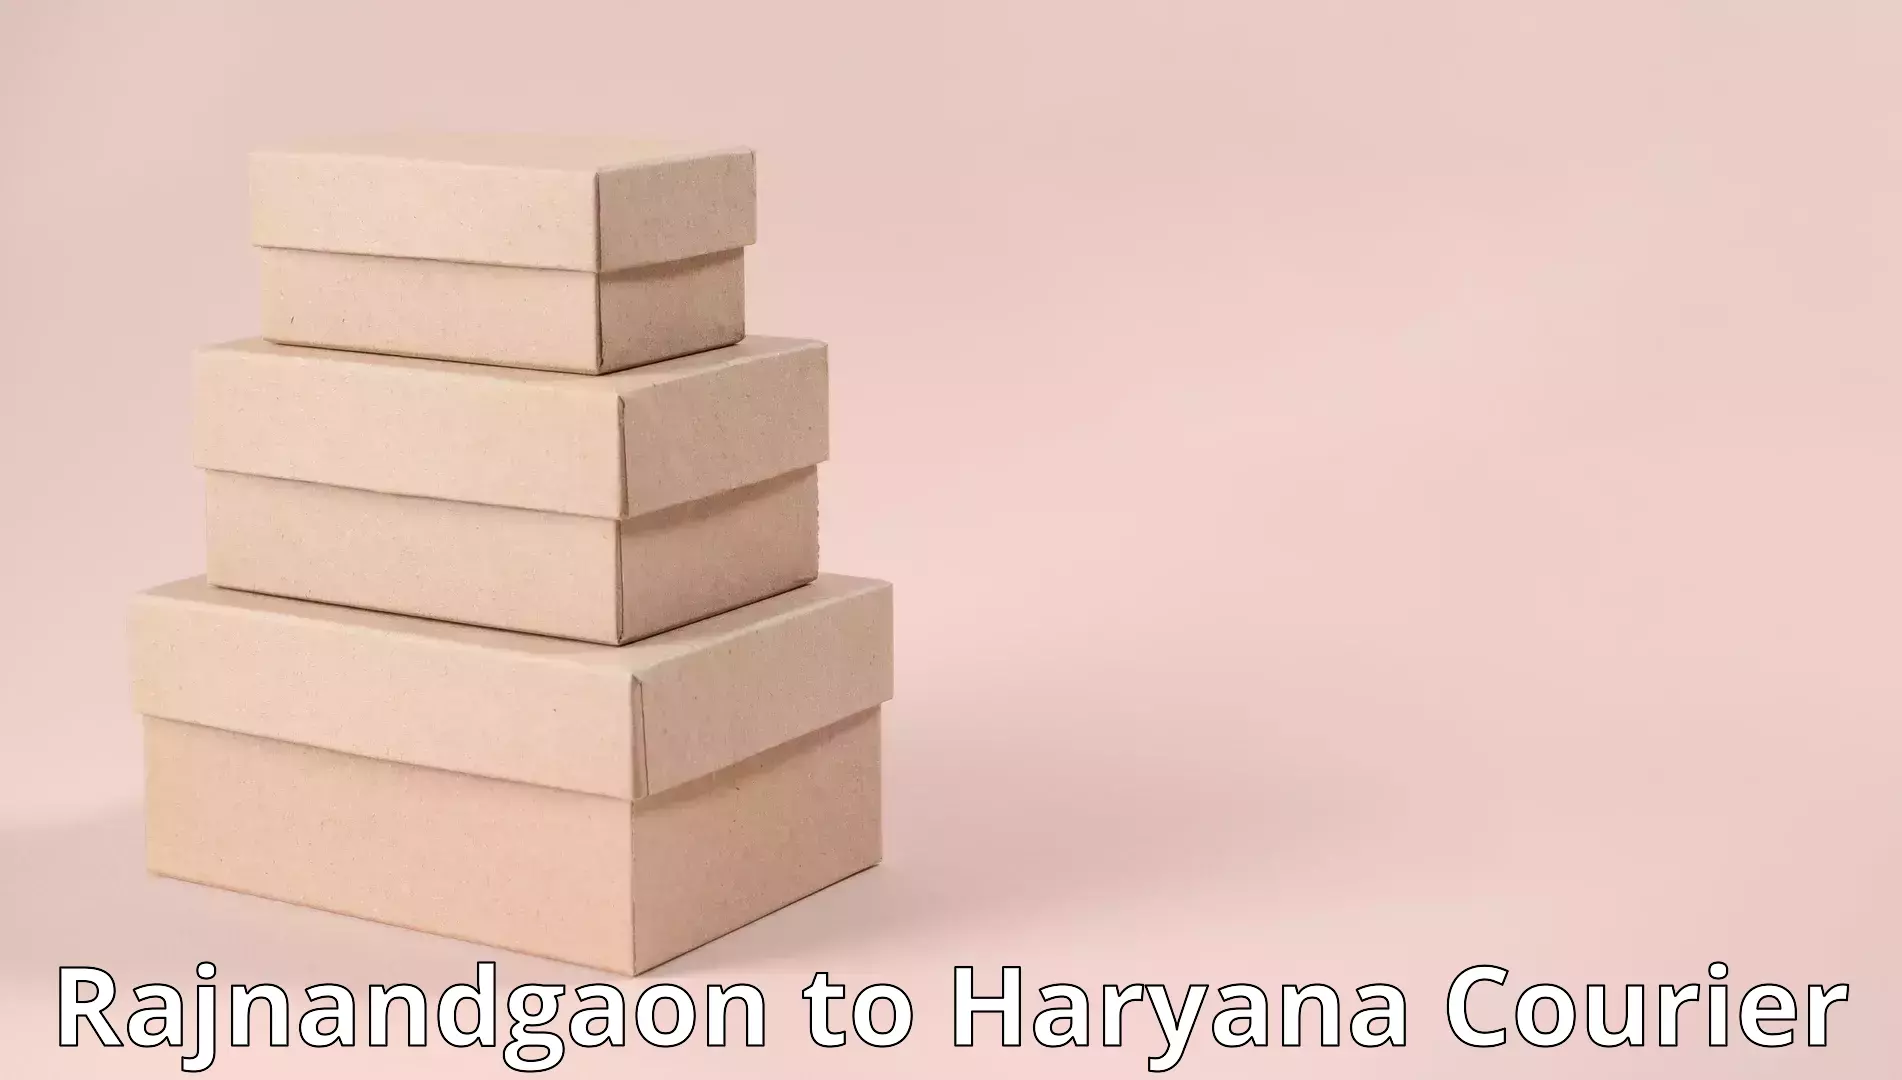 Furniture moving plans Rajnandgaon to Naraingarh